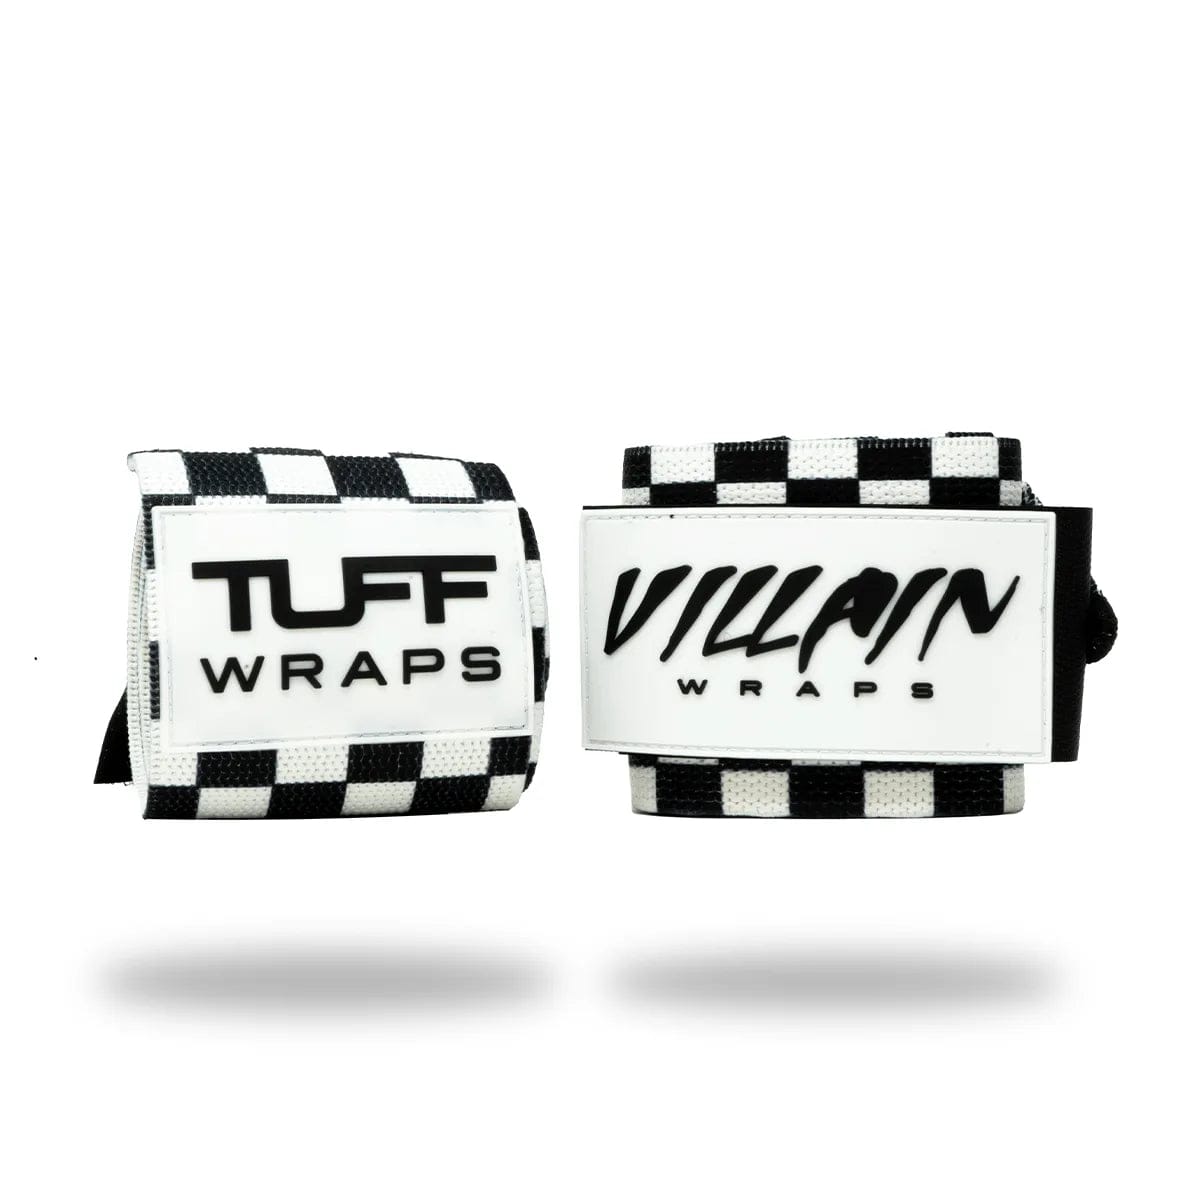 24" Villain Wrist Wraps - Checkerboard TuffWraps.com